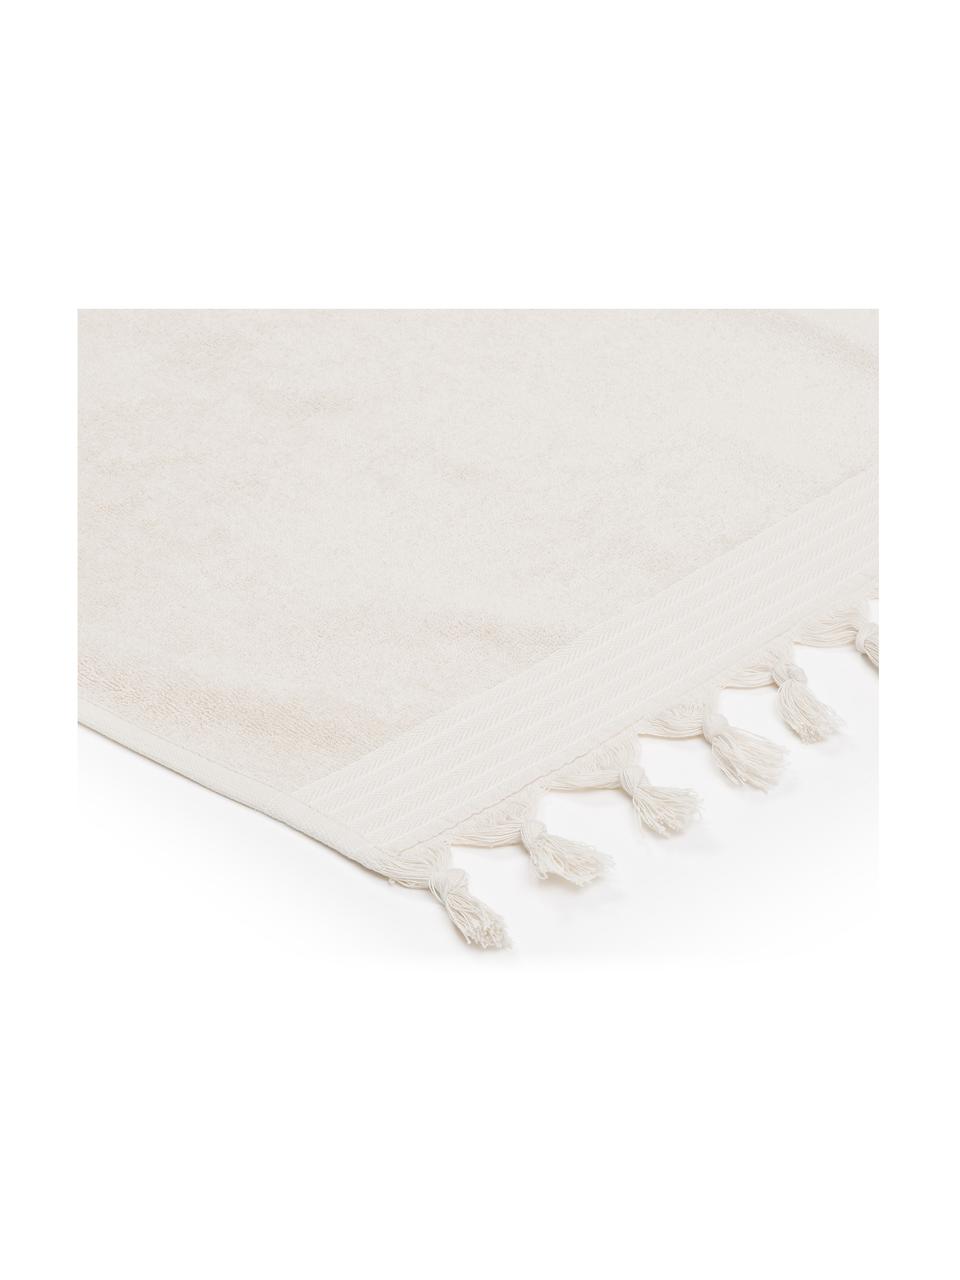 Fouta en tissu éponge Soft Coton, Beige clair, blanc, larg. 100 x long. 180 cm